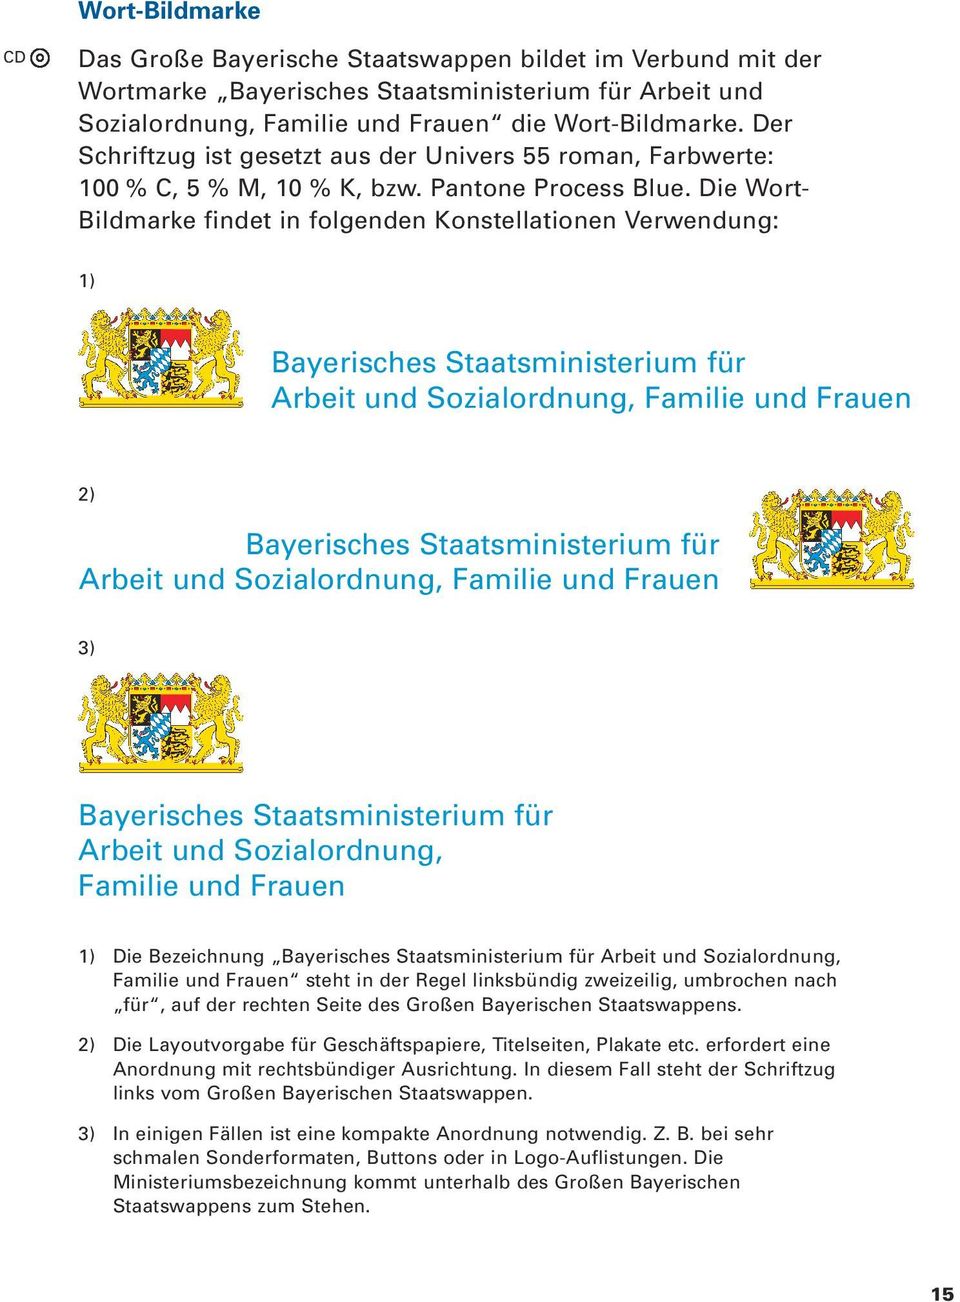 Die Wort- Bildmarke findet in folgenden Konstellationen Verwendung: 1) Bayerisches Staatsministerium für Arbeit und Sozialordnung, Familie und Frauen 2) Bayerisches Staatsministerium für Arbeit und